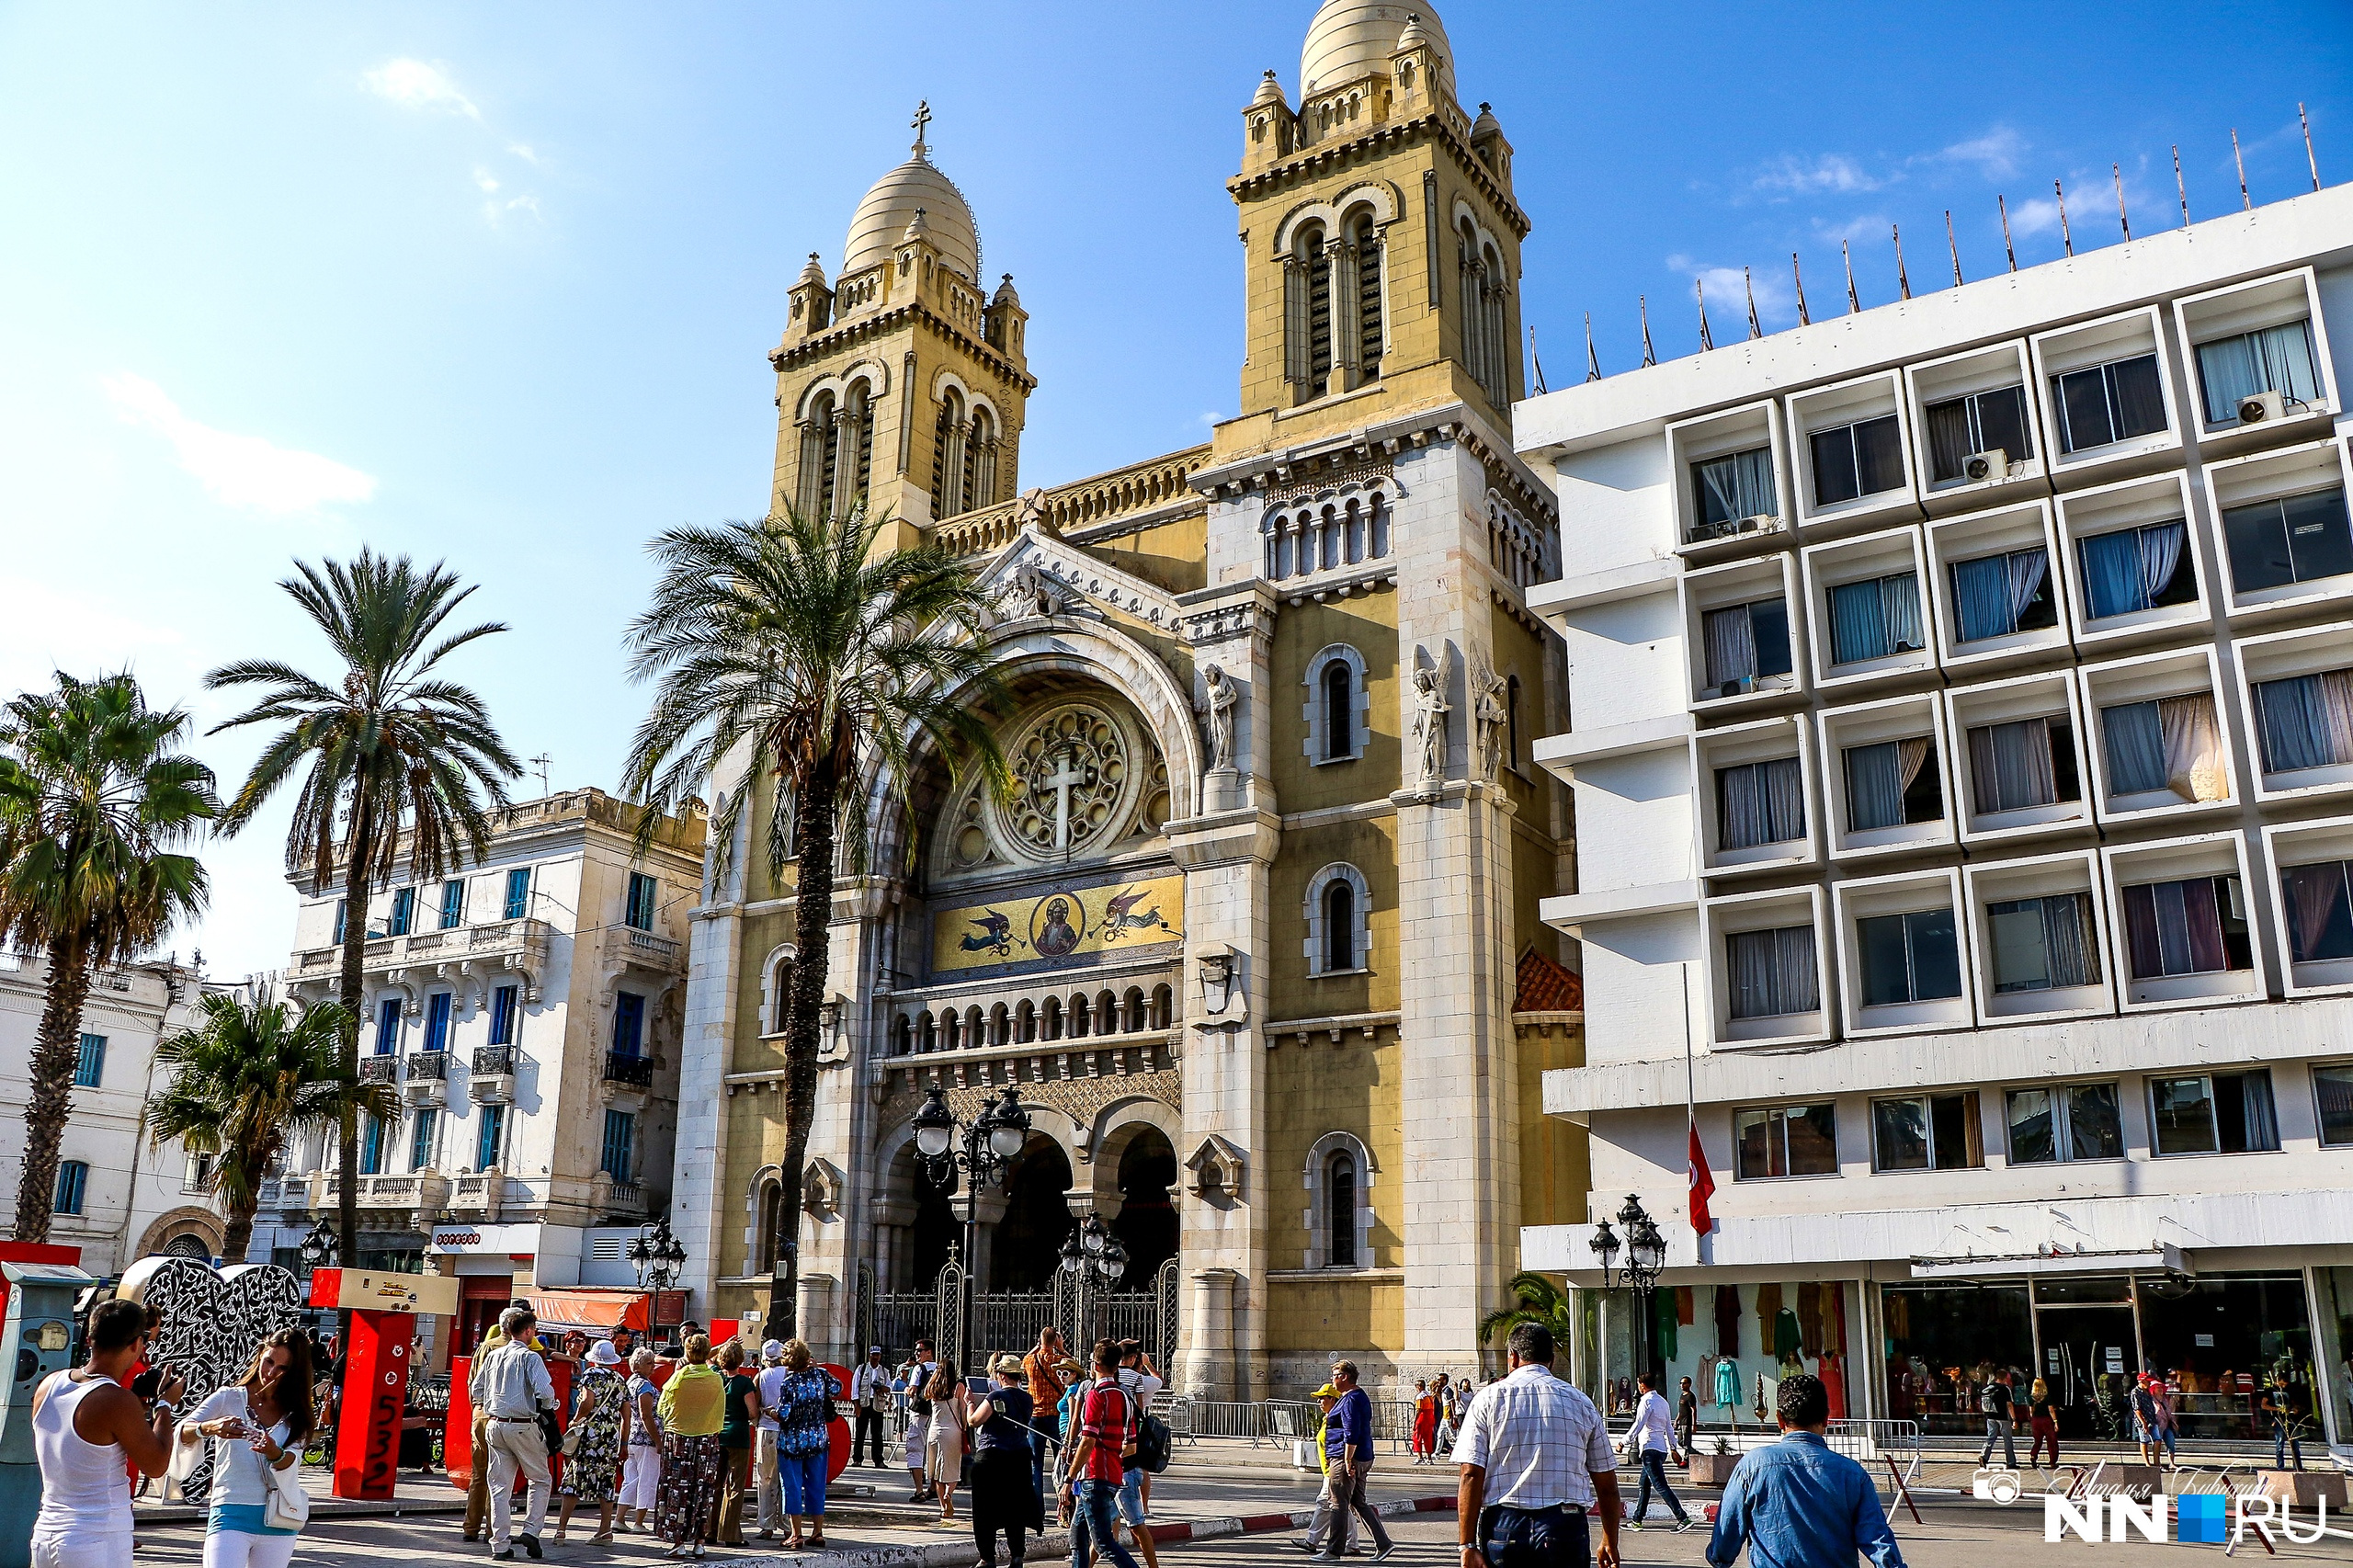 Тунис — столица Туниса. Кафедральный собор Сент-Винсент-де-Поль в романо-византийском стиле